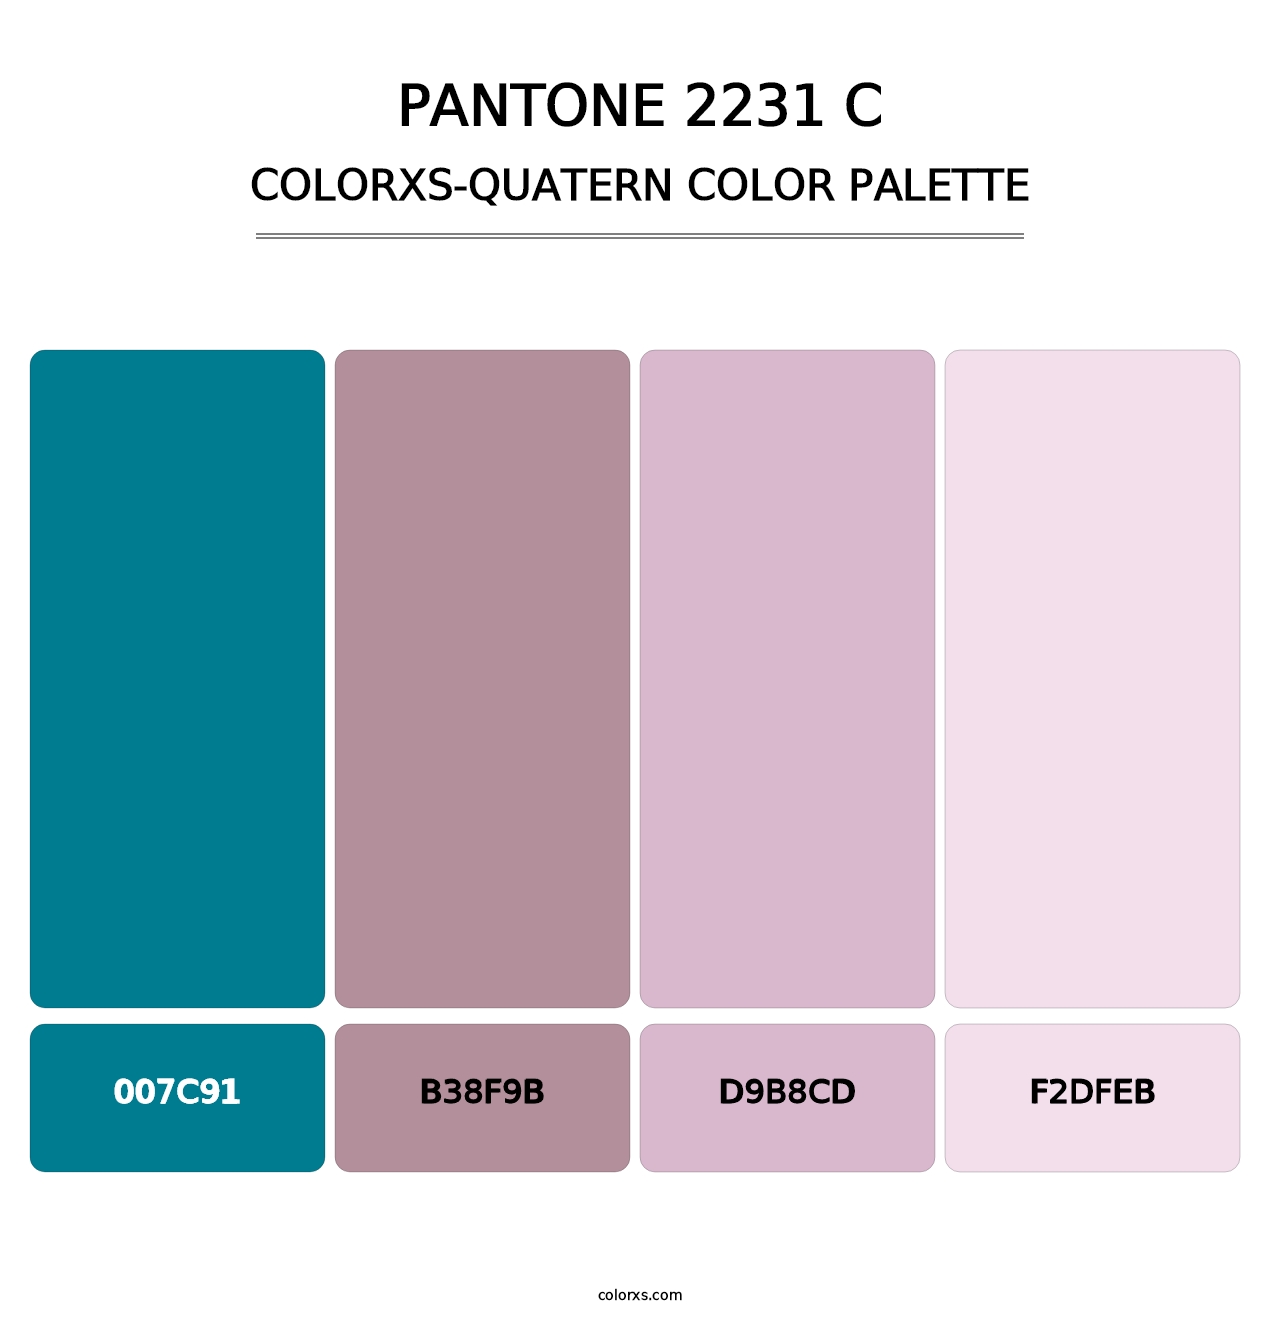 PANTONE 2231 C - Colorxs Quatern Palette